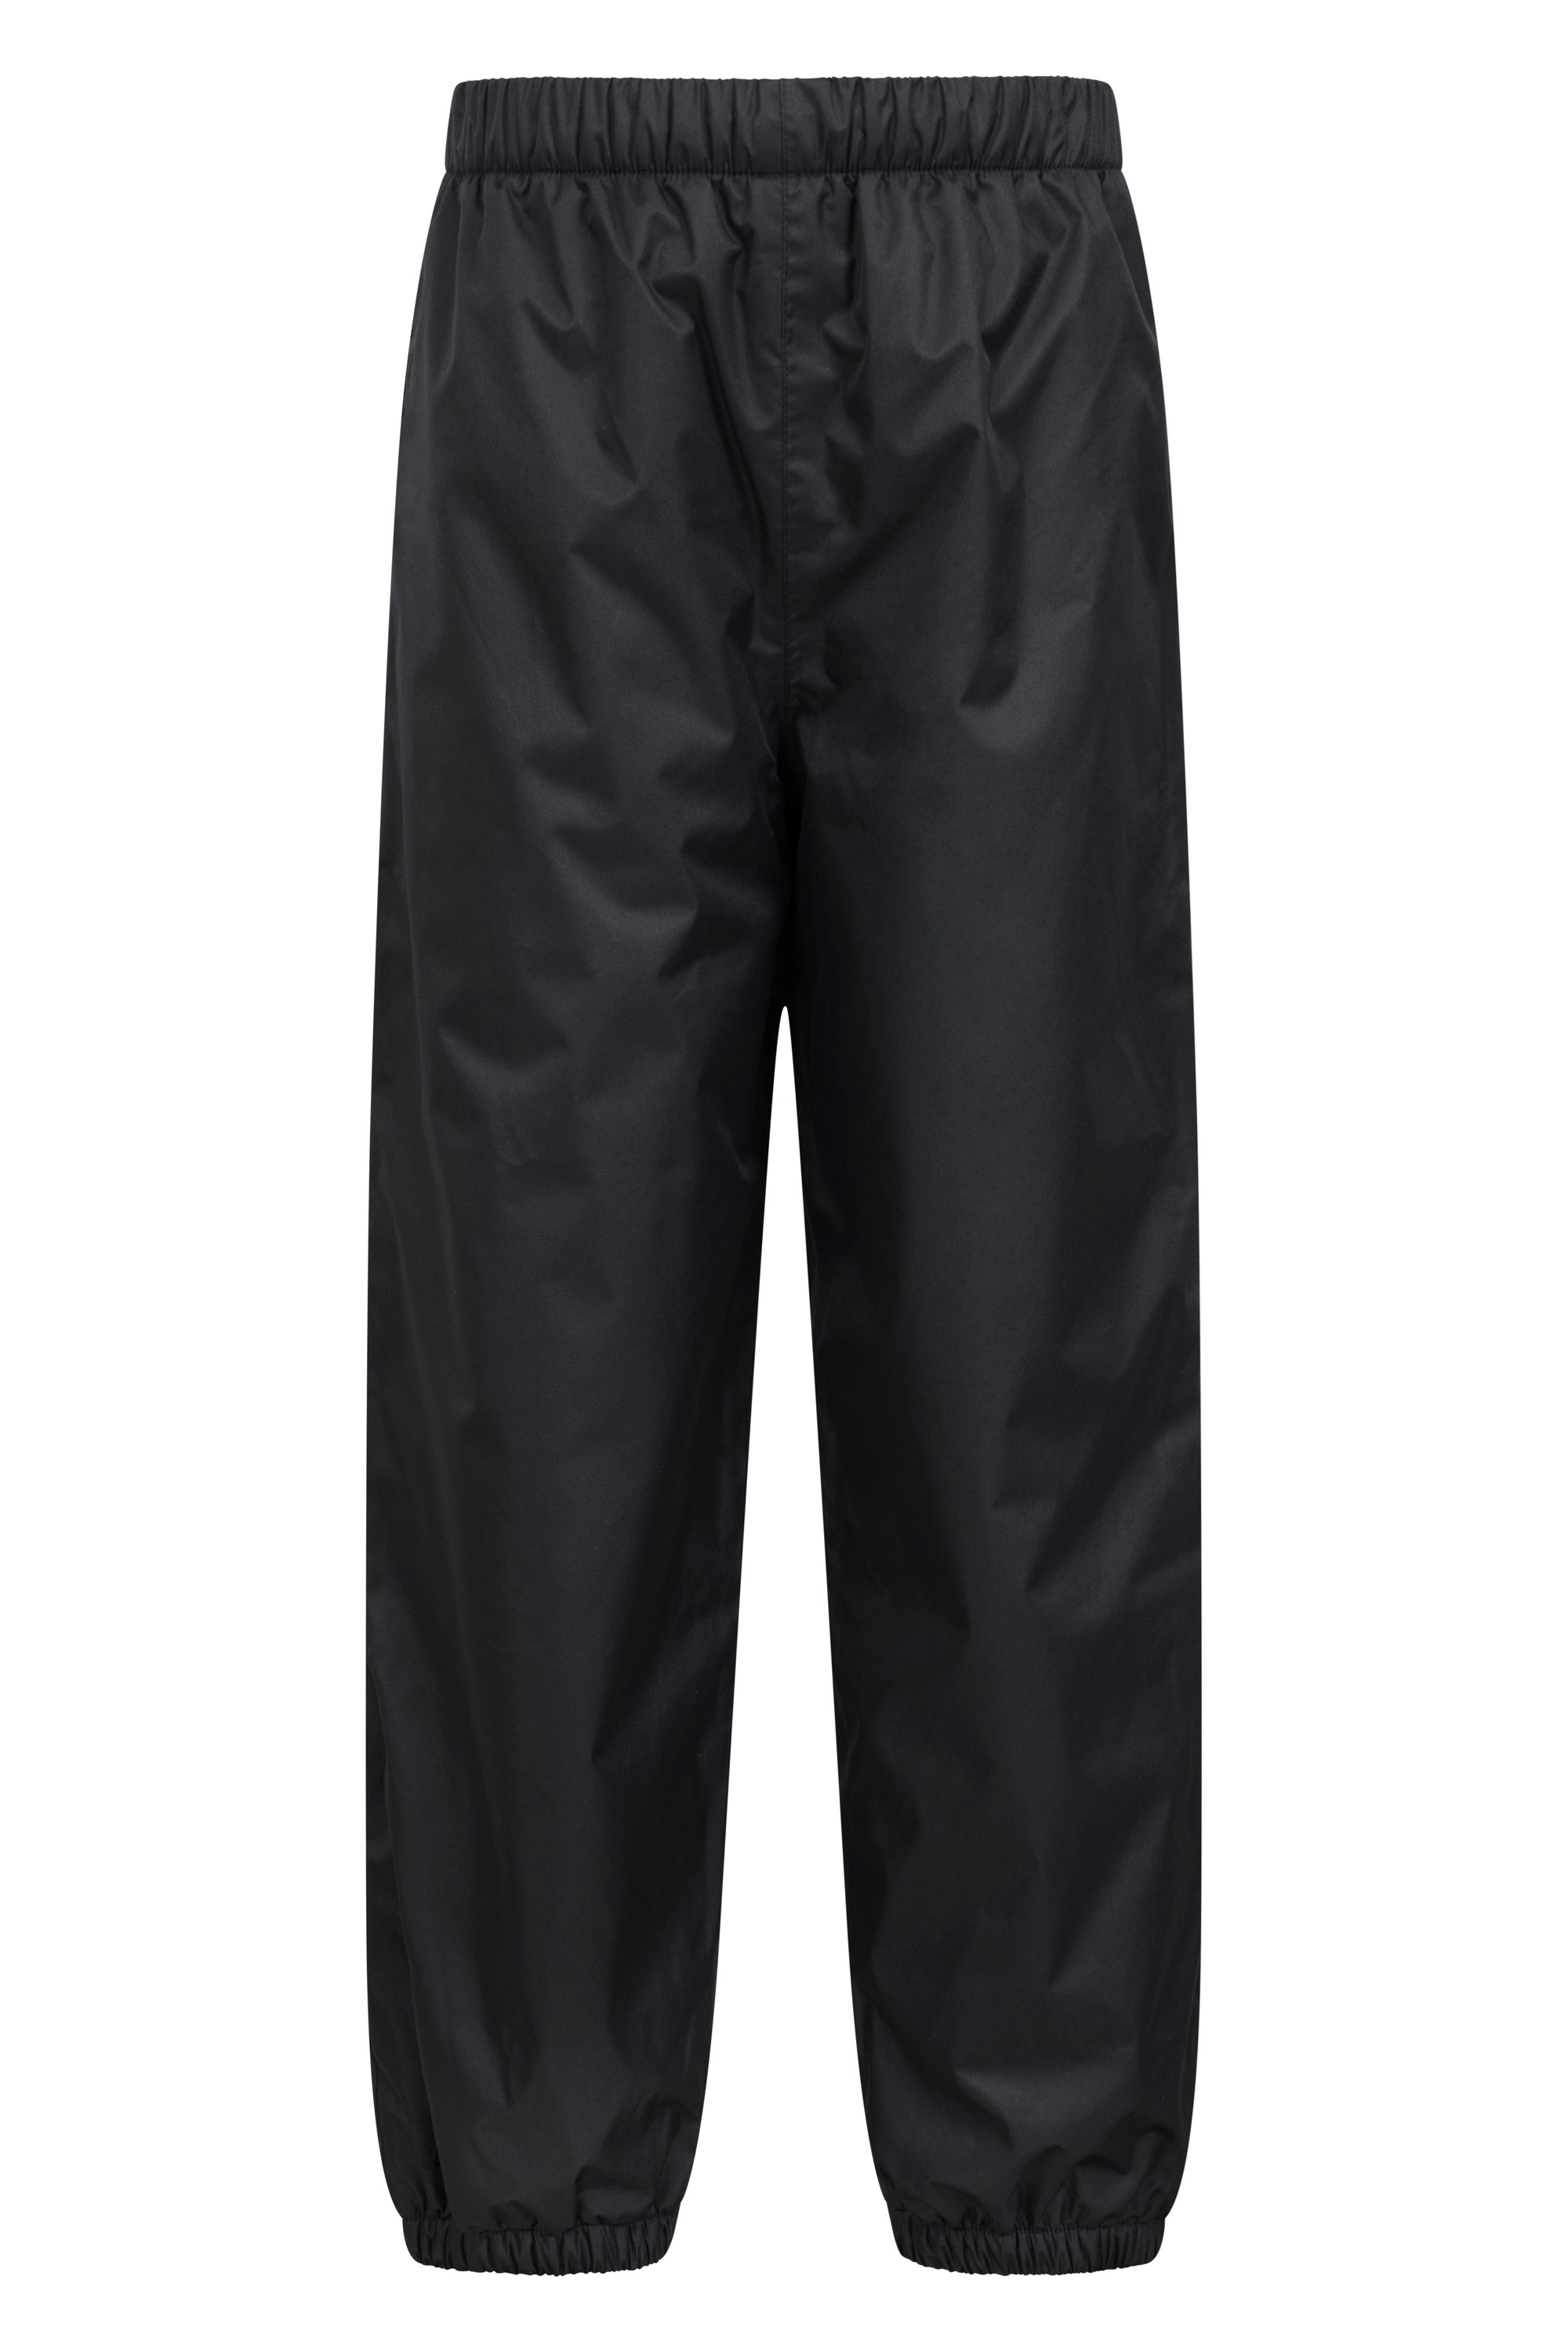 Waterproof Fleece Lined Kids Trousers - Black